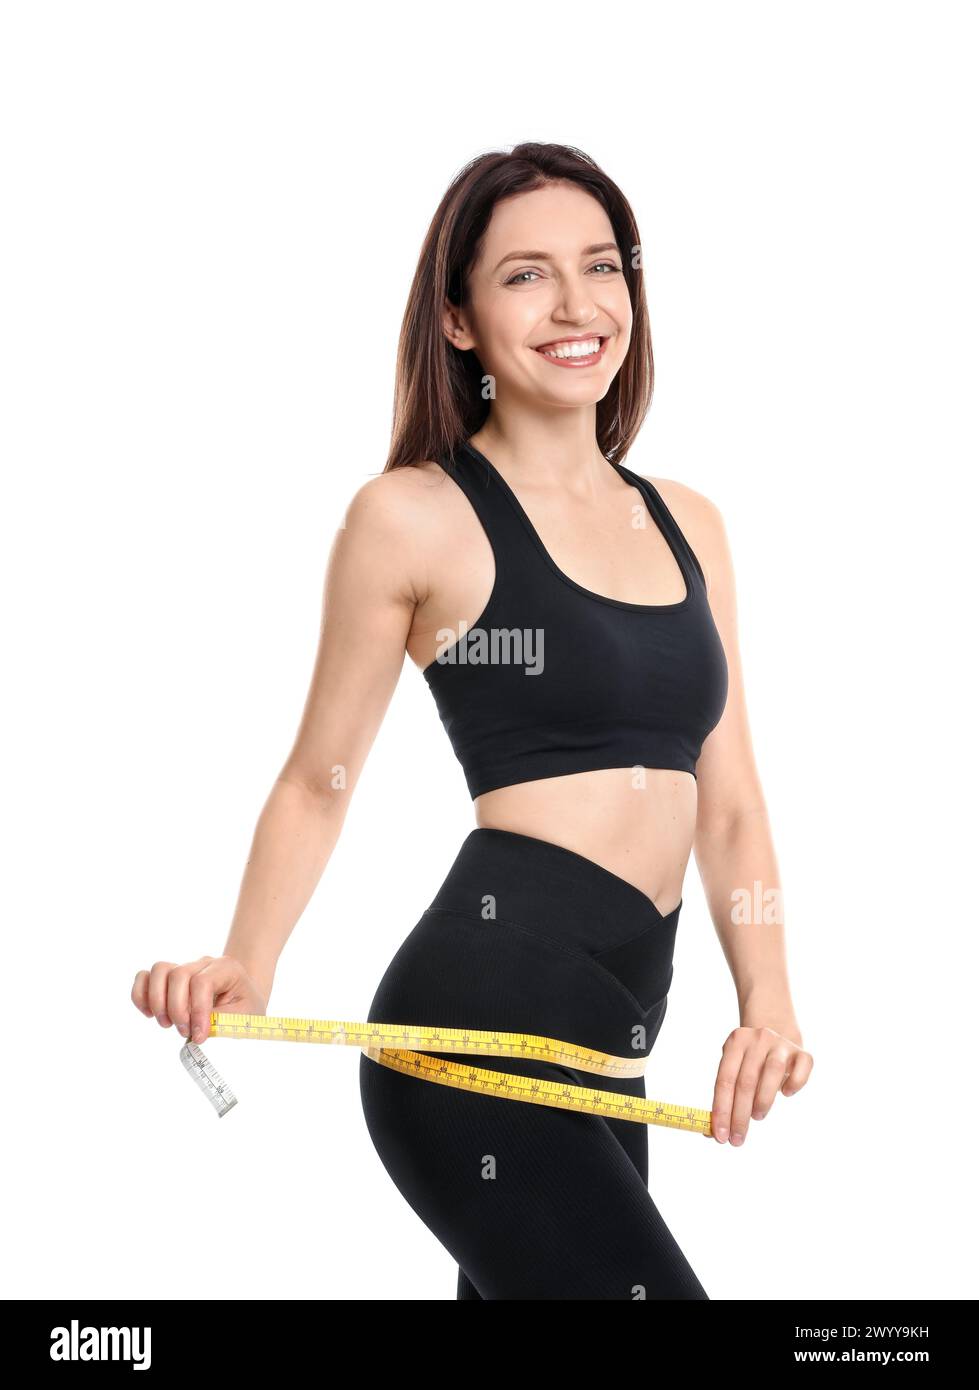 Glückliche junge Frau mit Maßband, das ihren schlanken Körper vor weißem Hintergrund zeigt Stockfoto